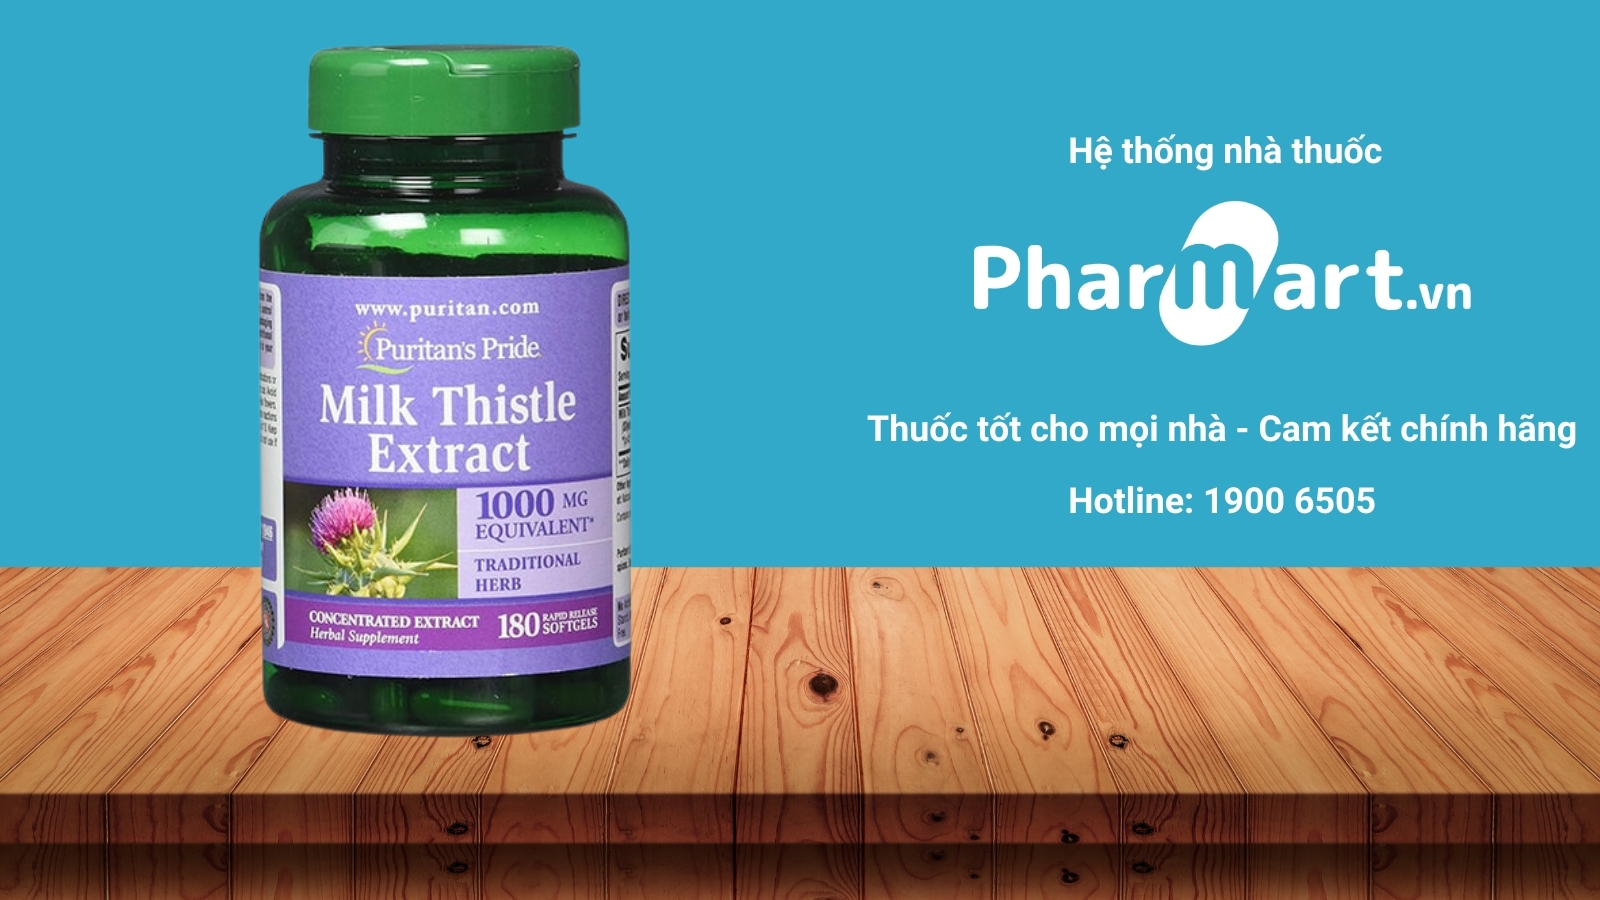 Milk thistle extract 1000mg hiện đang được bán chính hãng tại Nhà thuốc Pharmart.vn